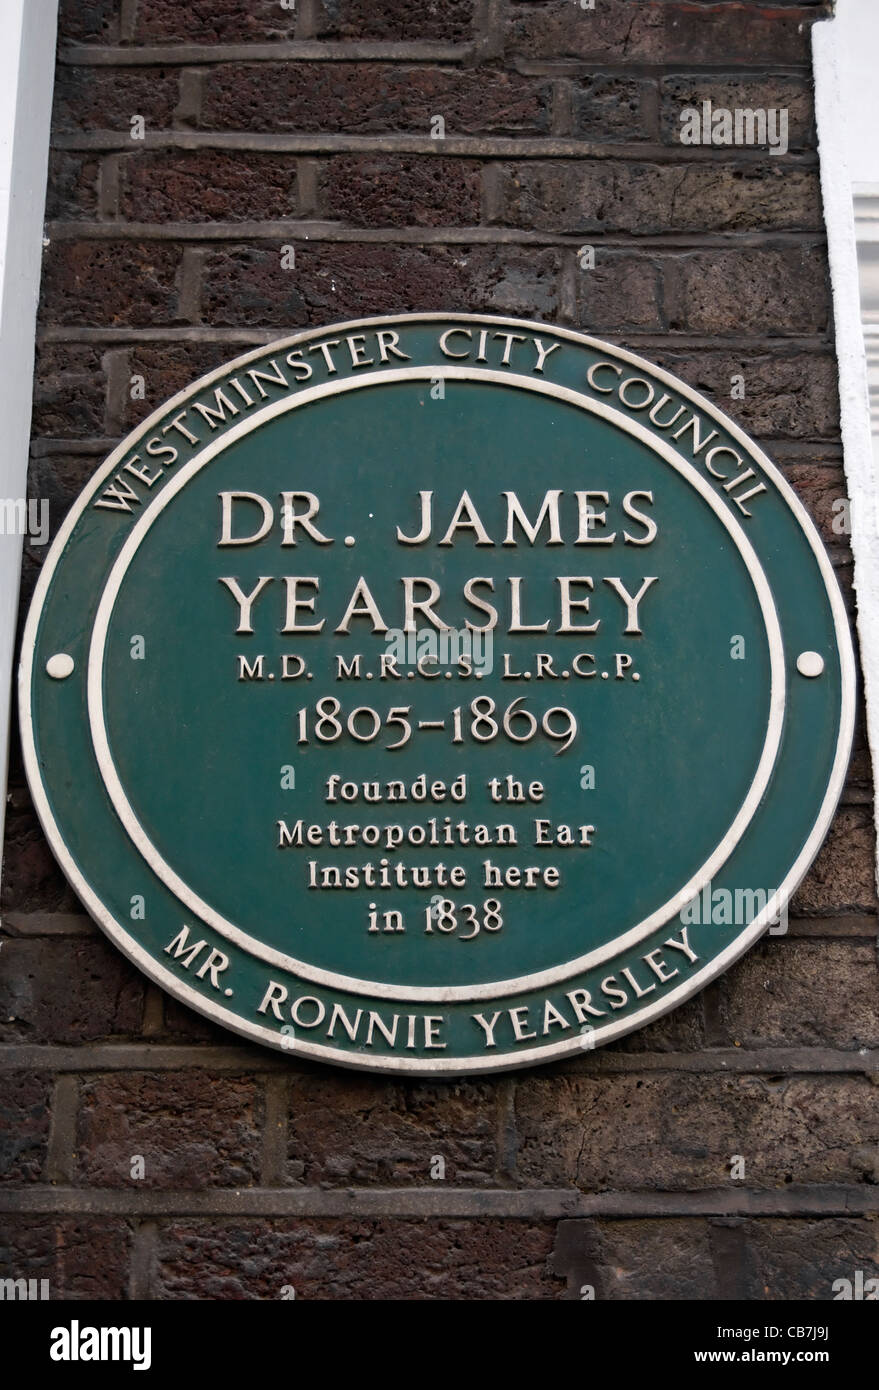 Marcatura della placca il sito dove, nel 1838, medico james yearsley fondato il metropolitan ear Institute di Londra, Inghilterra Foto Stock